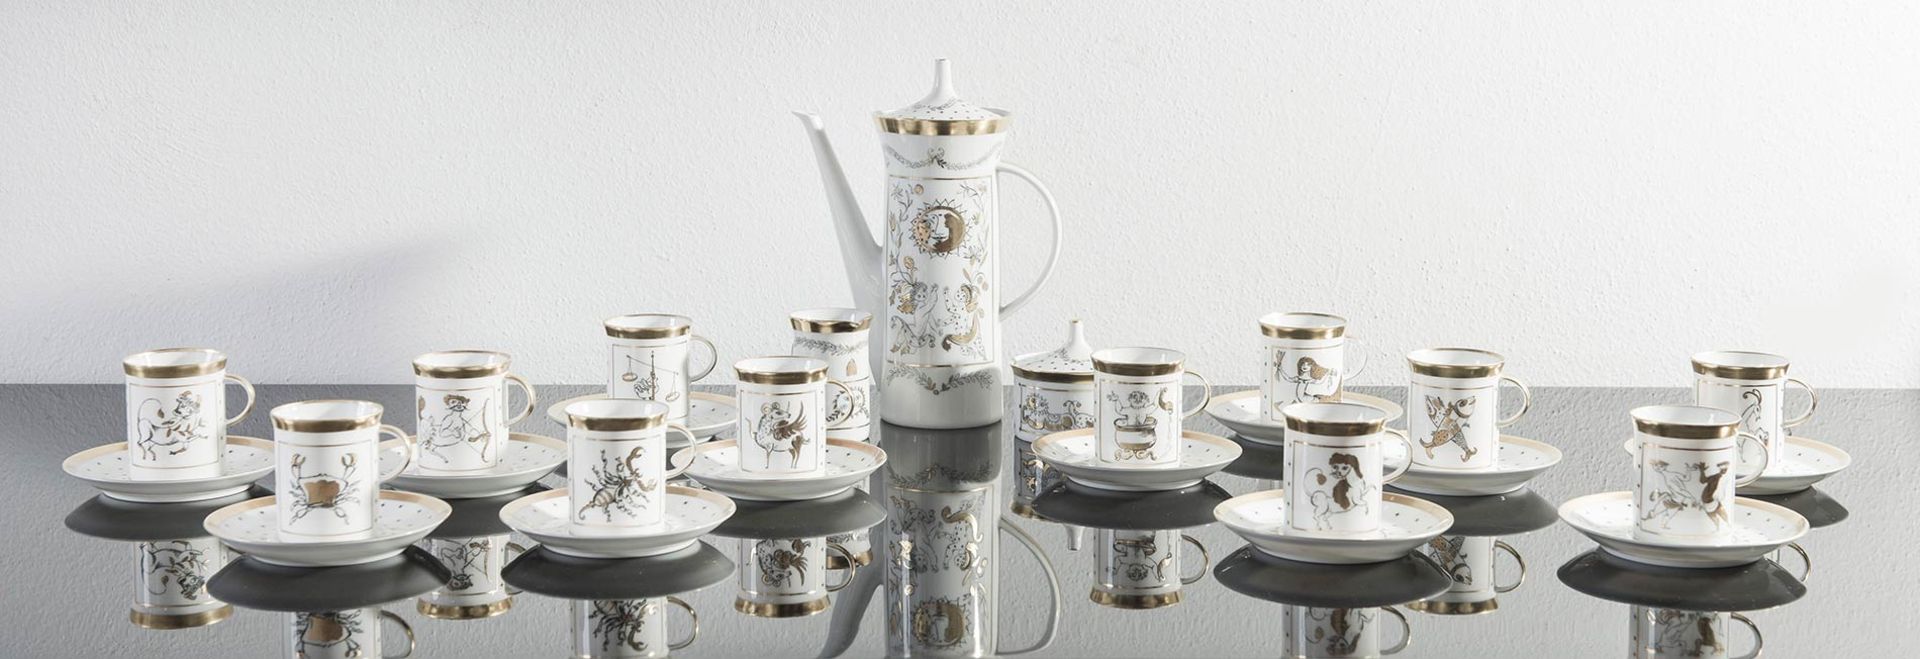 Rosenthal Studio Linie, Servizio da caffè da dodici persone in porcellana, Germania, XX secolo.